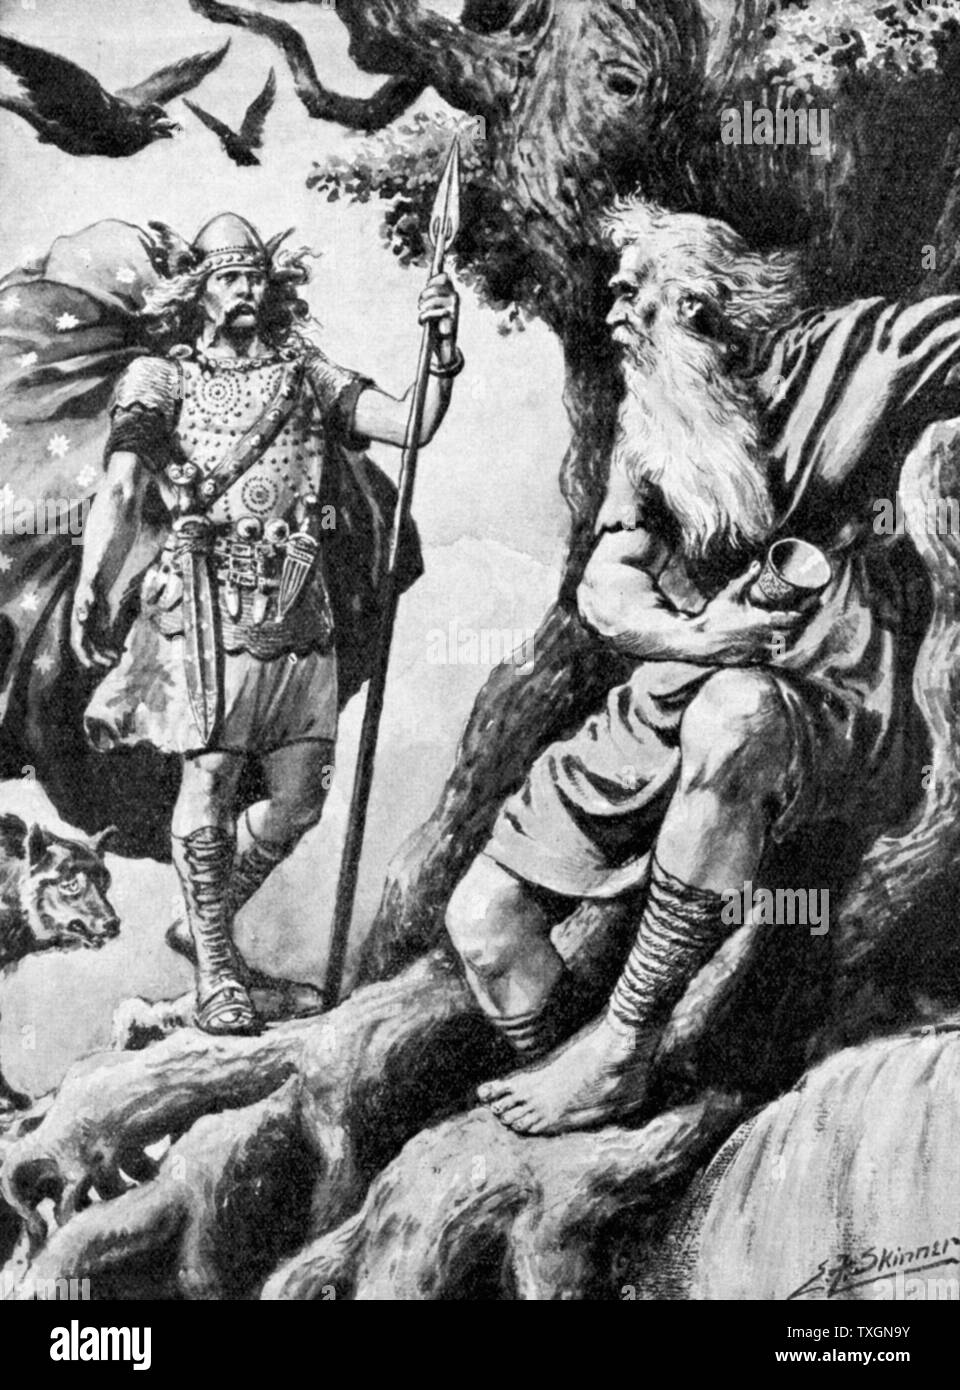 Odin oder Wotan. Einer der wichtigsten Götter der nordischen Mythologie. Gott des Krieges. Hier sucht er Weisheit, ihn zu treffen. Für diese opfert er ein Auge. Mit ihm sind die Raben Huggin (Gedanke) und Muninn (Speicher). Rasterungs-c1900. Stockfoto